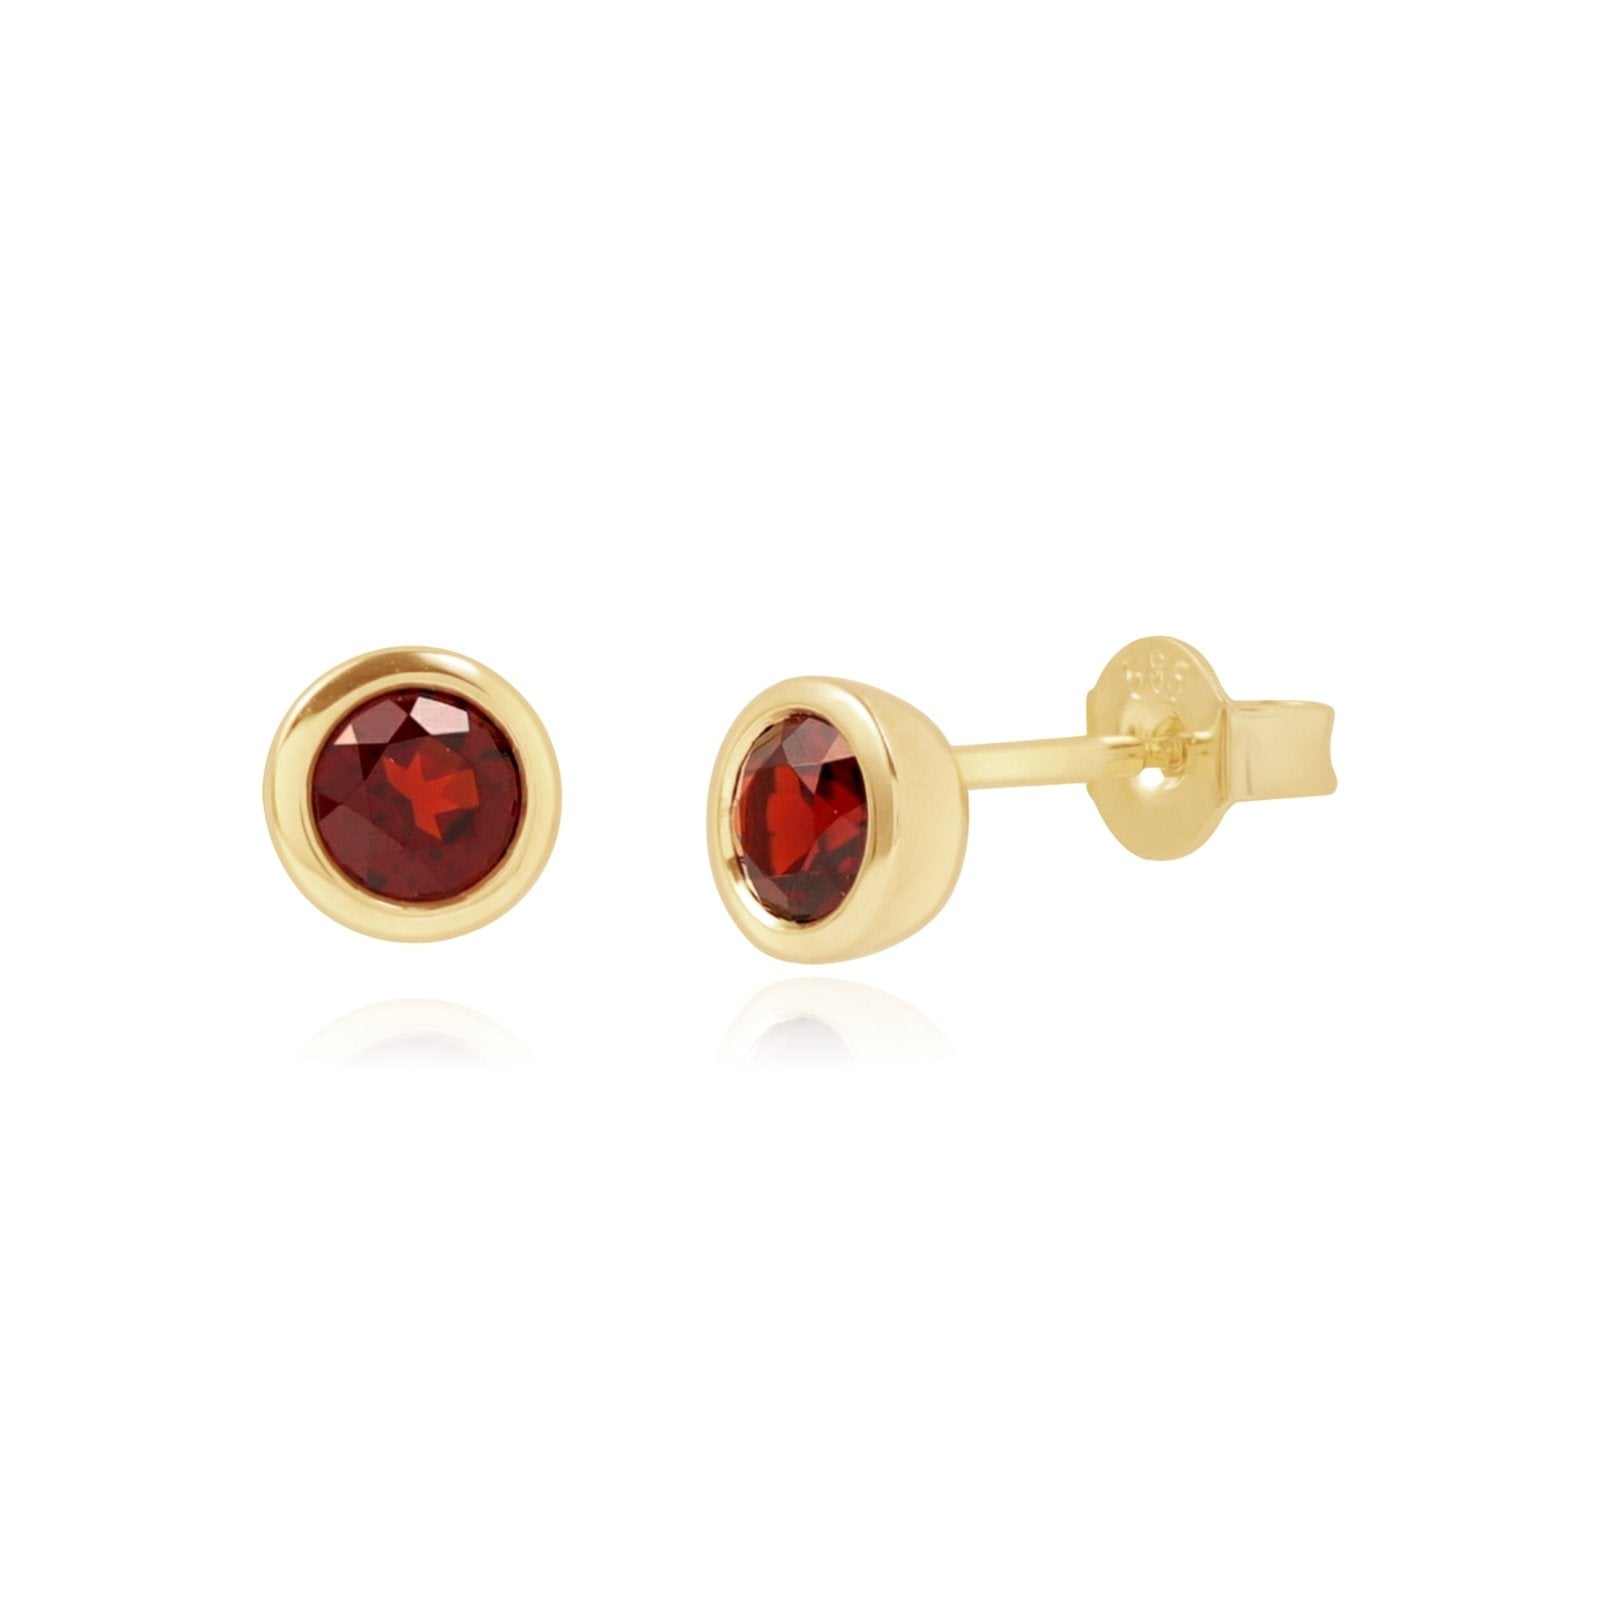 Round Garnet Stud Earrings Bezel Earrings Estella Collection #product_description# 14k Birthstone Earrings #tag4# #tag5# #tag6# #tag7# #tag8# #tag9# #tag10#